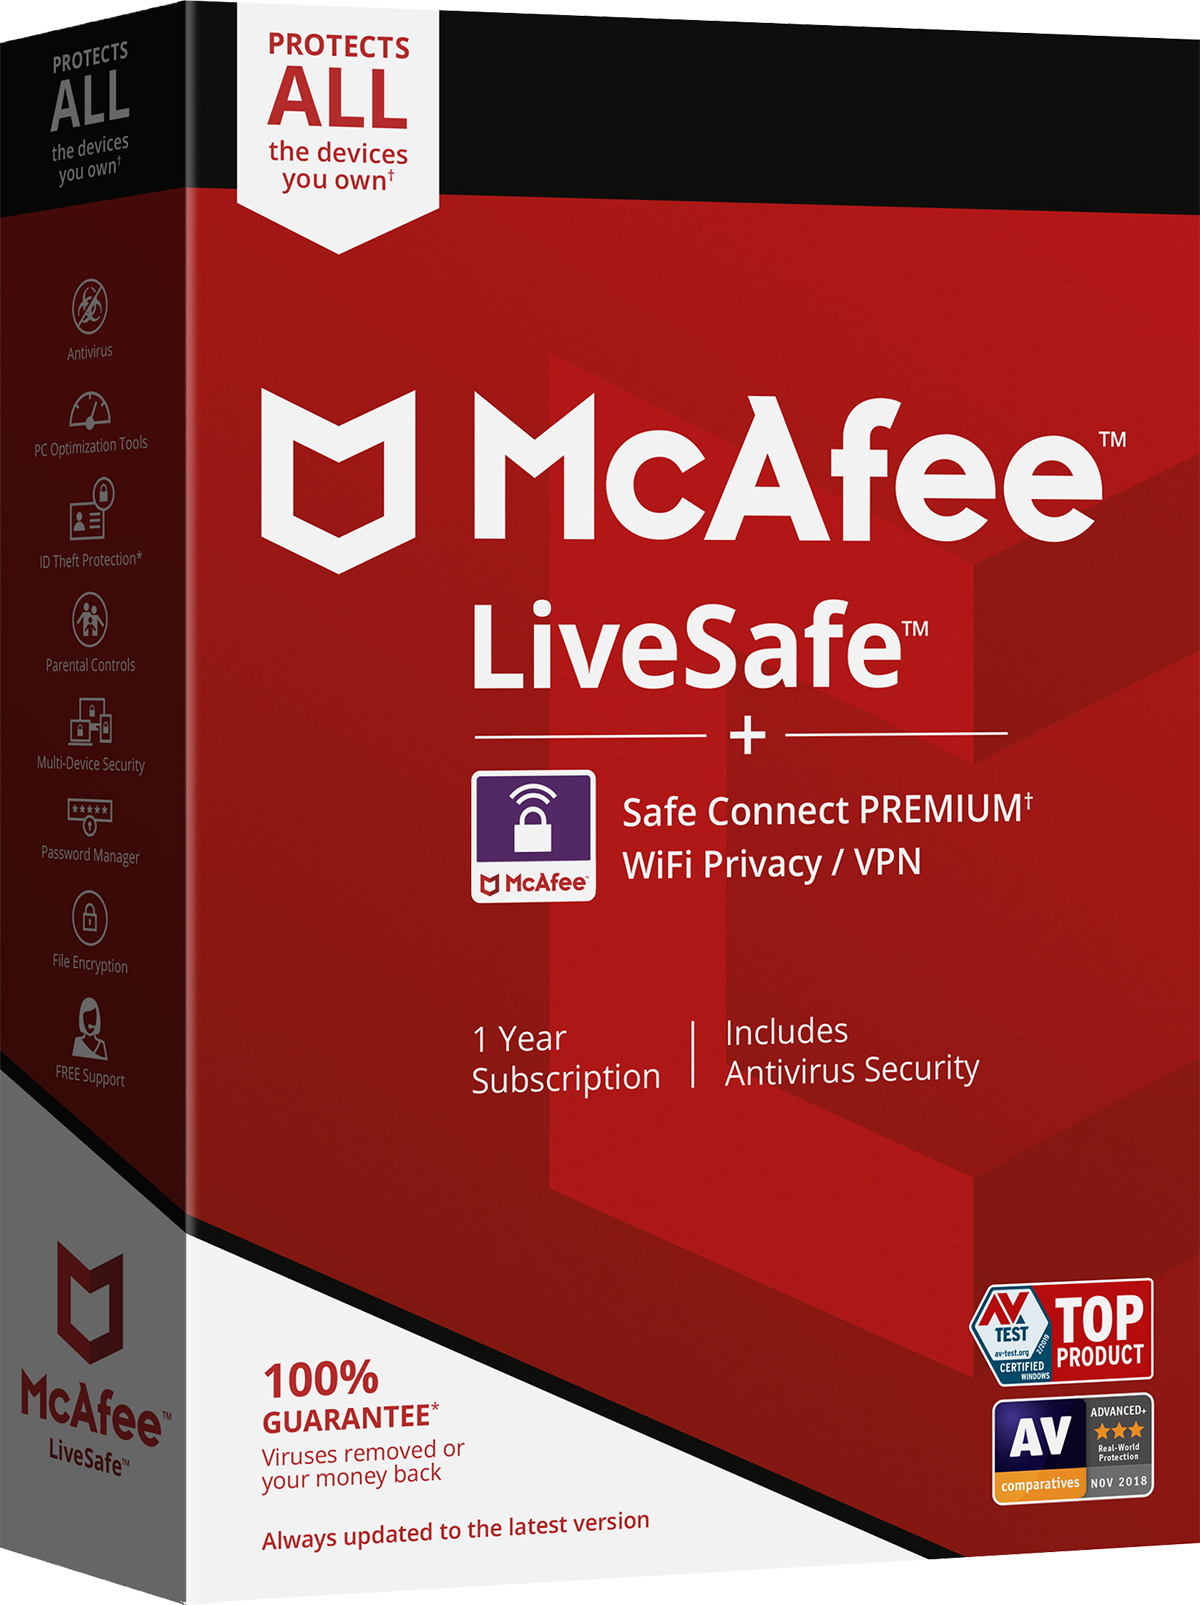 Mcafee browser. MCAFEE антивирус. MCAFEE LIVESAFE. MCAFEE логотип. Антивирусные программы MCAFEE.